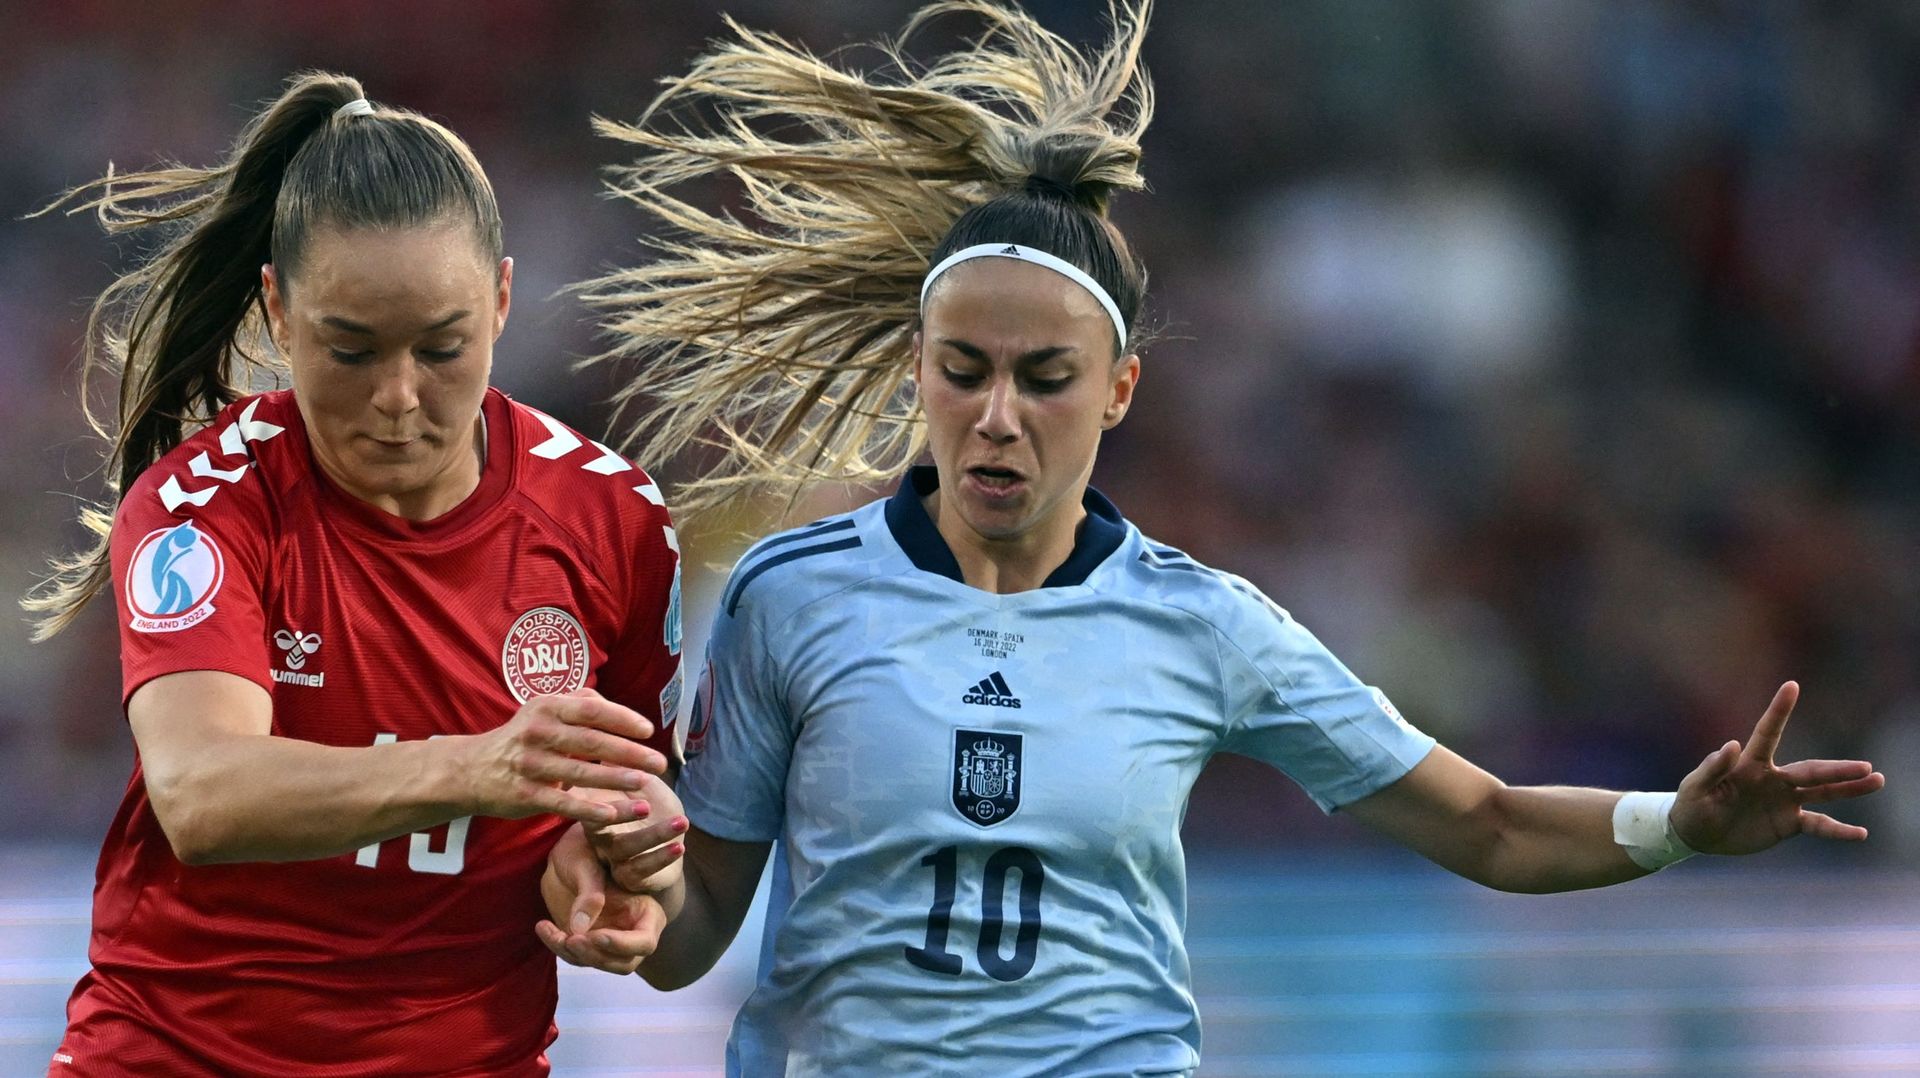 Grâce à un but en toute fin de match, après 89 minutes de domination outrageuse, l’Espagne a battu le Danemark (1-0) et s’est qualifiée pour les quarts de finale de l’Euro féminin de football en Angleterre, en terminant deuxième du groupe B.